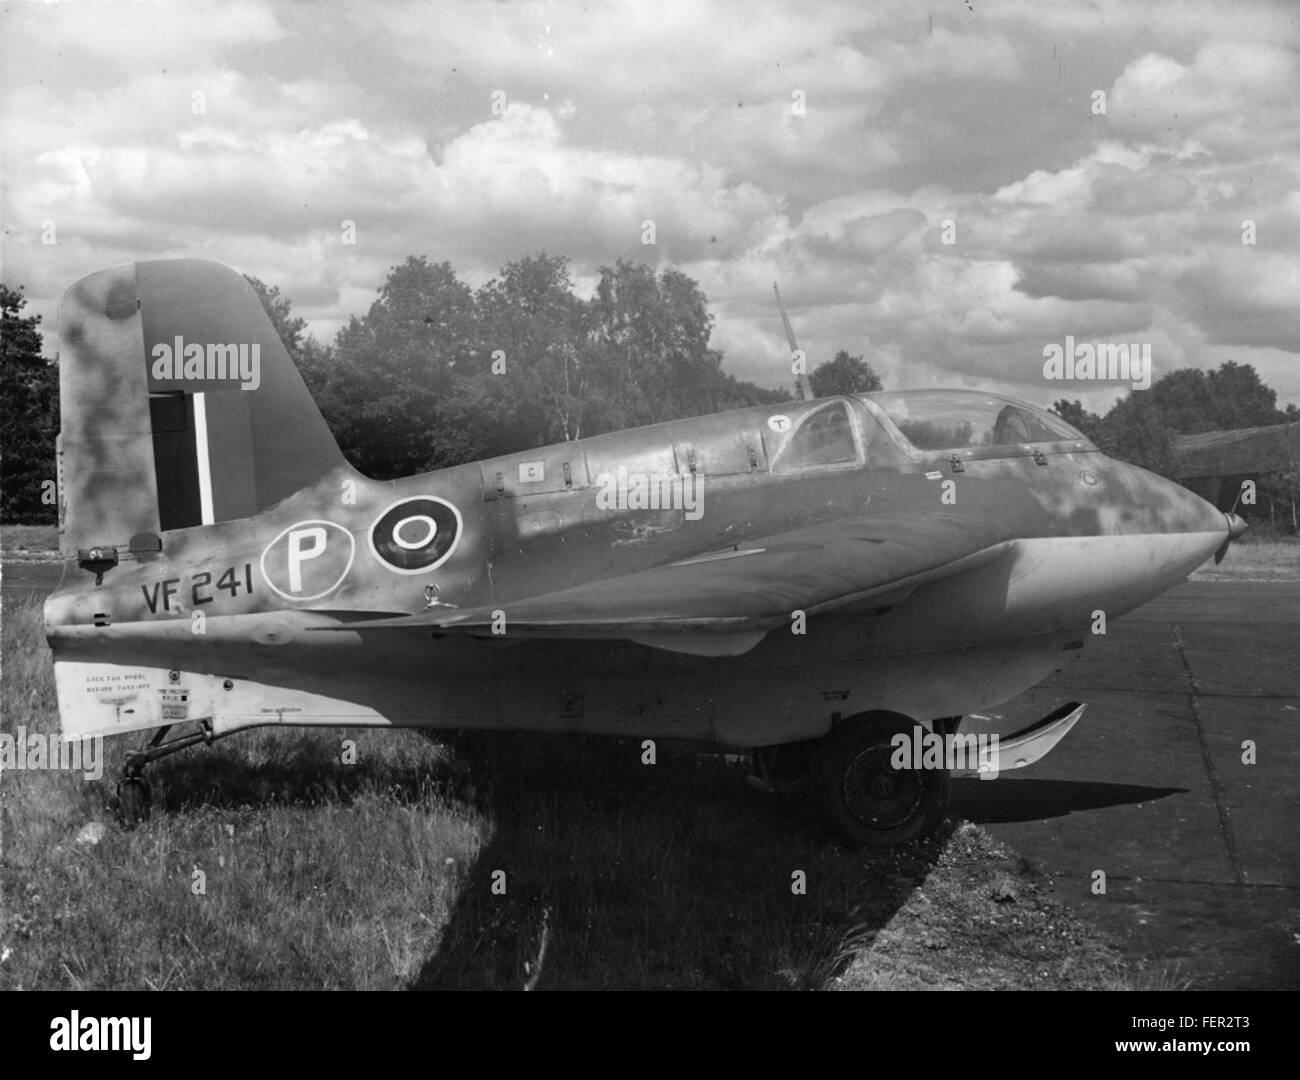 Messerschmitt Me 163 Komet, VF241 mit britischen Markierungen Stockfoto